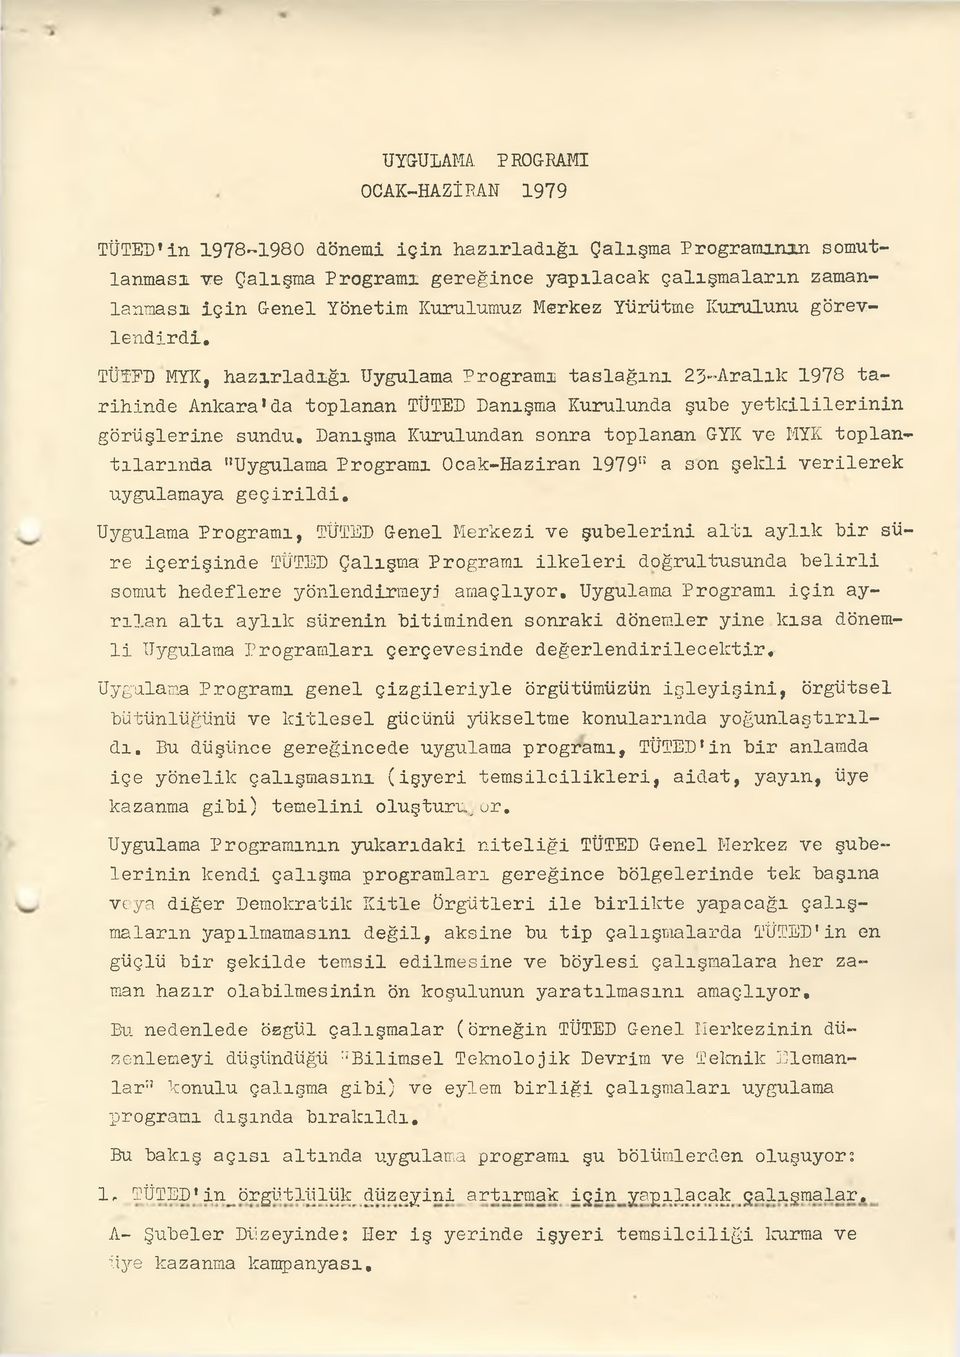 TÜTED MYK, hazırladığı Uygulama Programı taslağını 23-Aralık 1978 tarihinde Ankara*da toplanan TÜTED Danışma Kurulunda şube yetkililerinin görüşlerine sundu.